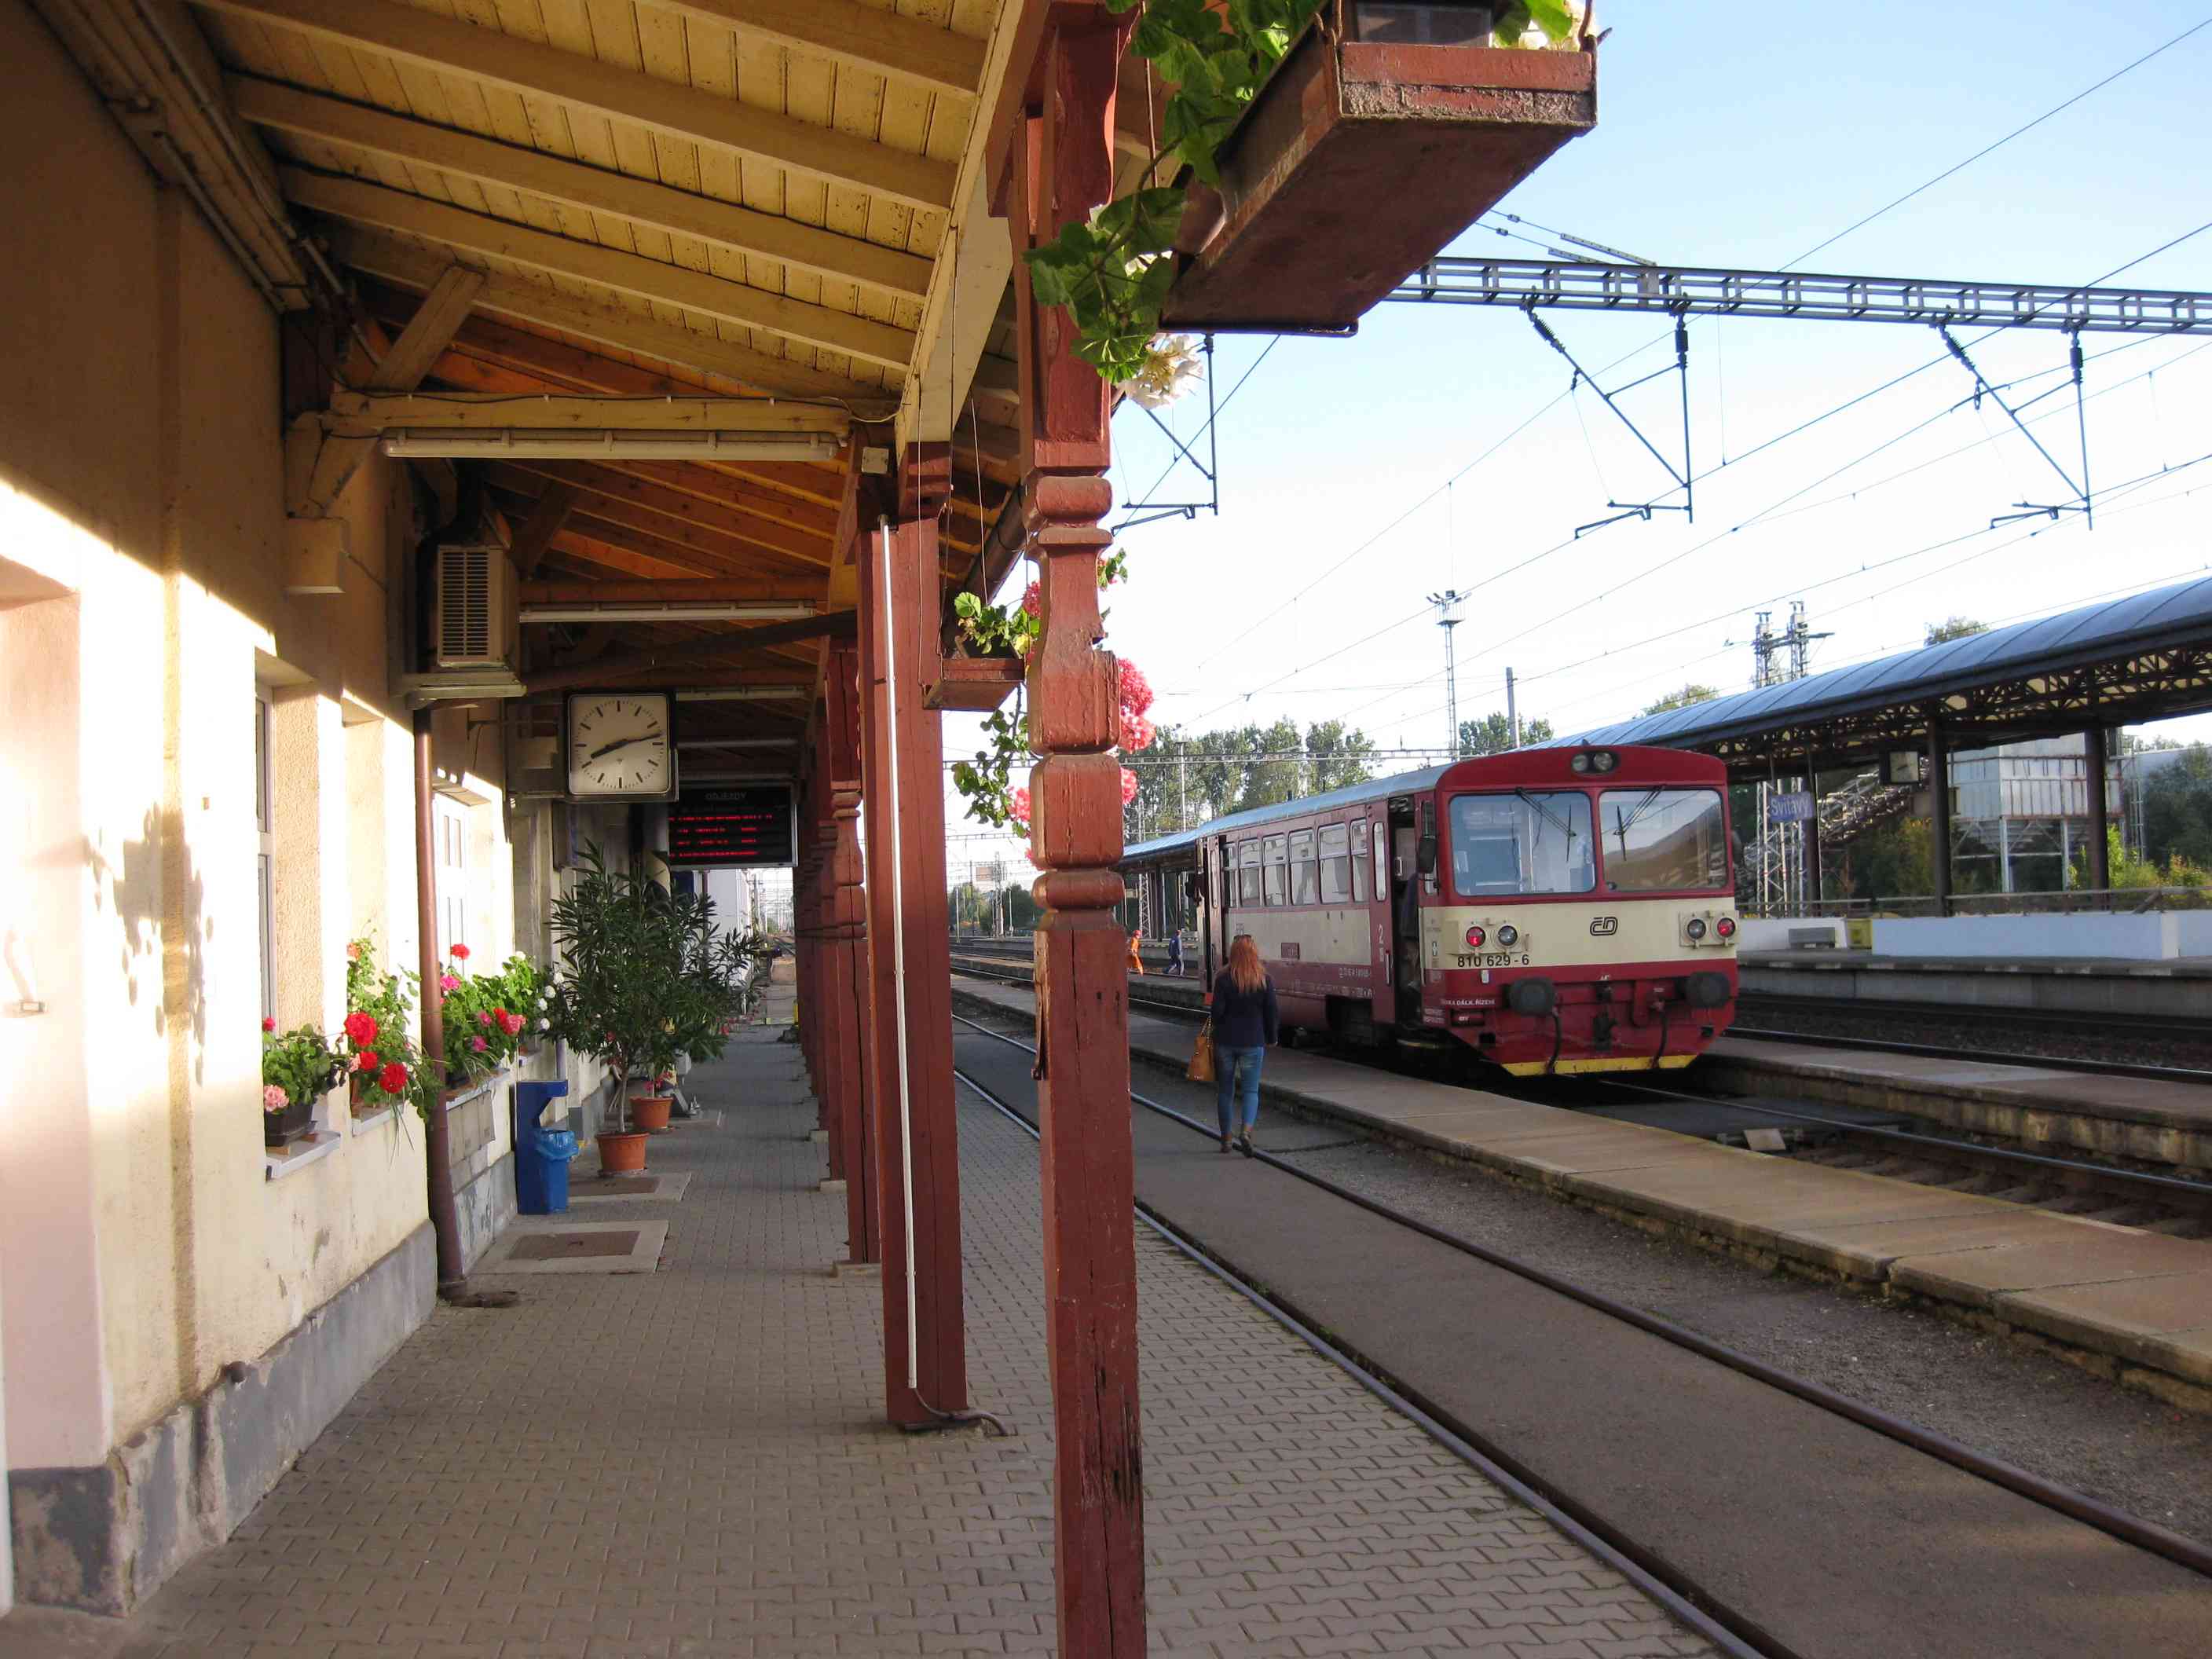 Bahnhof Svitavy, Tschechien